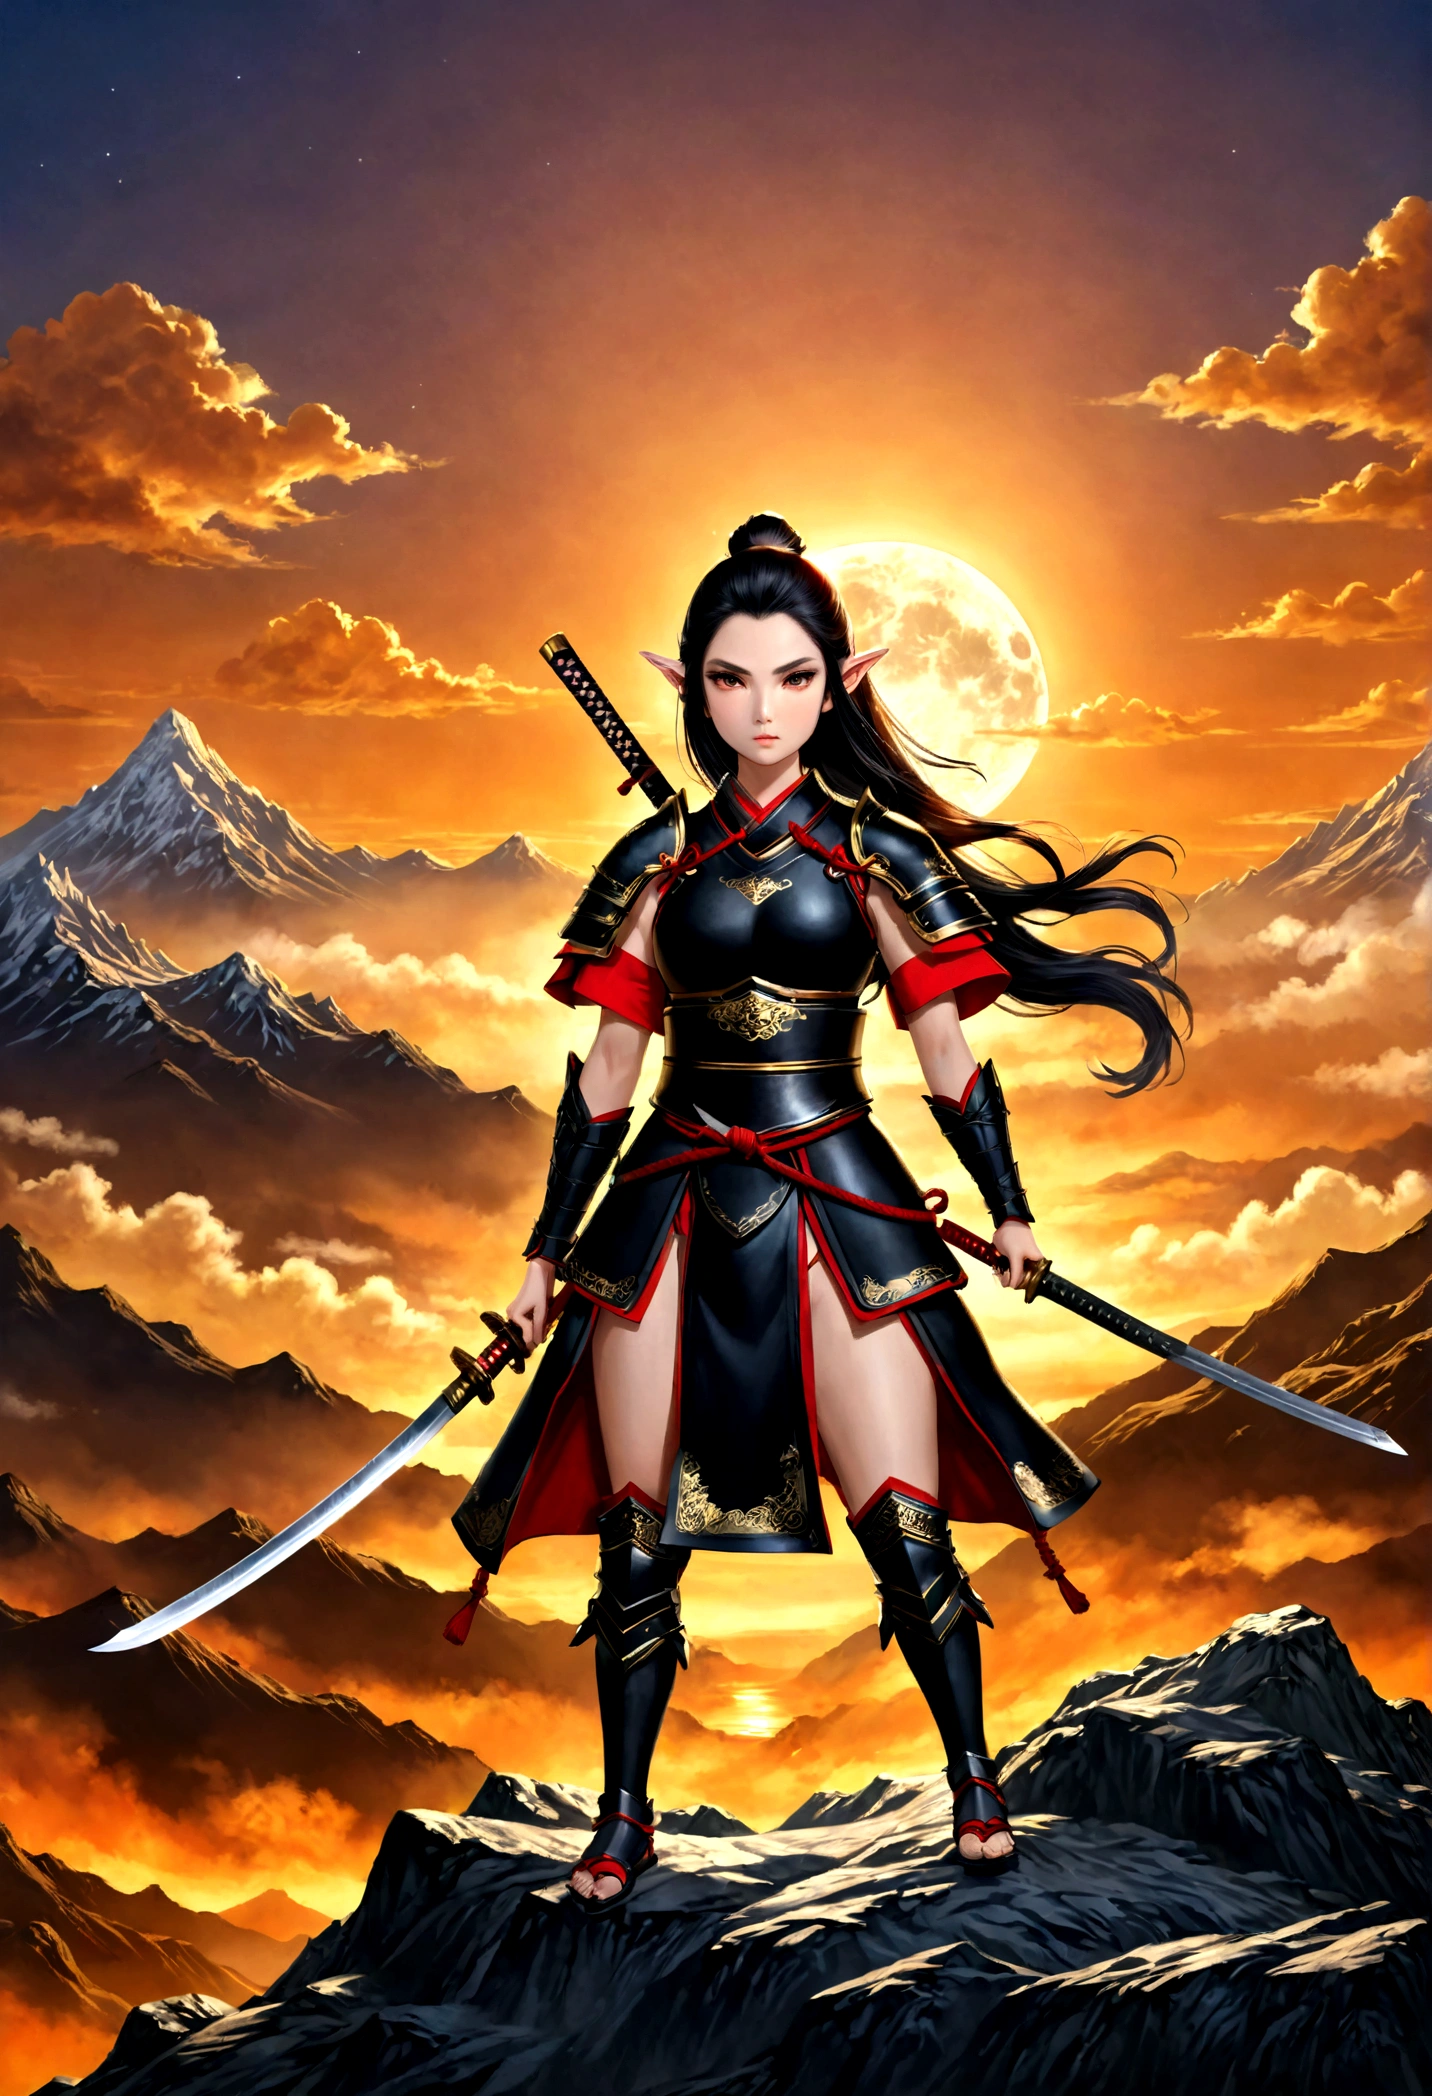 фэнтези-арт, РПГ арт, dark фэнтези-арт, женщина-эльф-самурай, готов к бою, она носит традиционные самурайские доспехи,  она носит бронированную юбку, вооружен катаной, она стоит на вершине горы на рассвете, изысканная красивая эльфийка, Длинные волосы, черные волосы, Прямые волосы, Плетеные волосы, черные глаза, напряженные глаза, маленькие заостренные уши, Фэнтезийная вершина горы на рассвете, луна, звезды, облака, Бог лучи, мягкий силуэт естественного света, Динамический угол, фотореализм, Панорамный вид, ультра лучший реалистичный, лучшие детали, 16 тыс., [Ультра подробный], шедевр, Лучшее качество, (чрезвычайно подробный), фотореализм, 